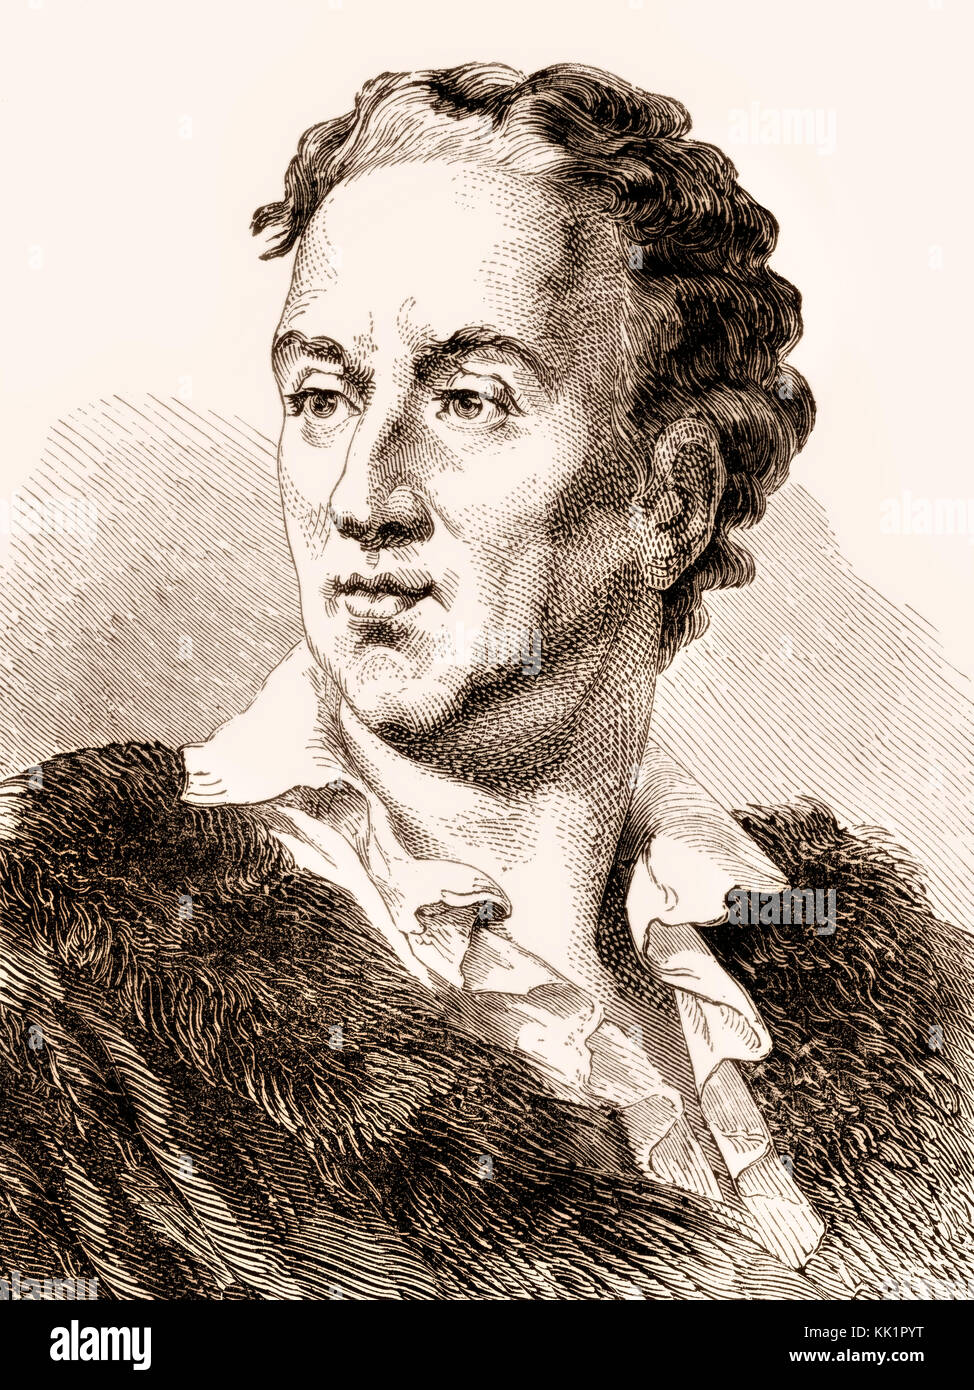 Denis Diderot, 1713 - 1784, uno scrittore francese, filosofo illuminista  Foto stock - Alamy